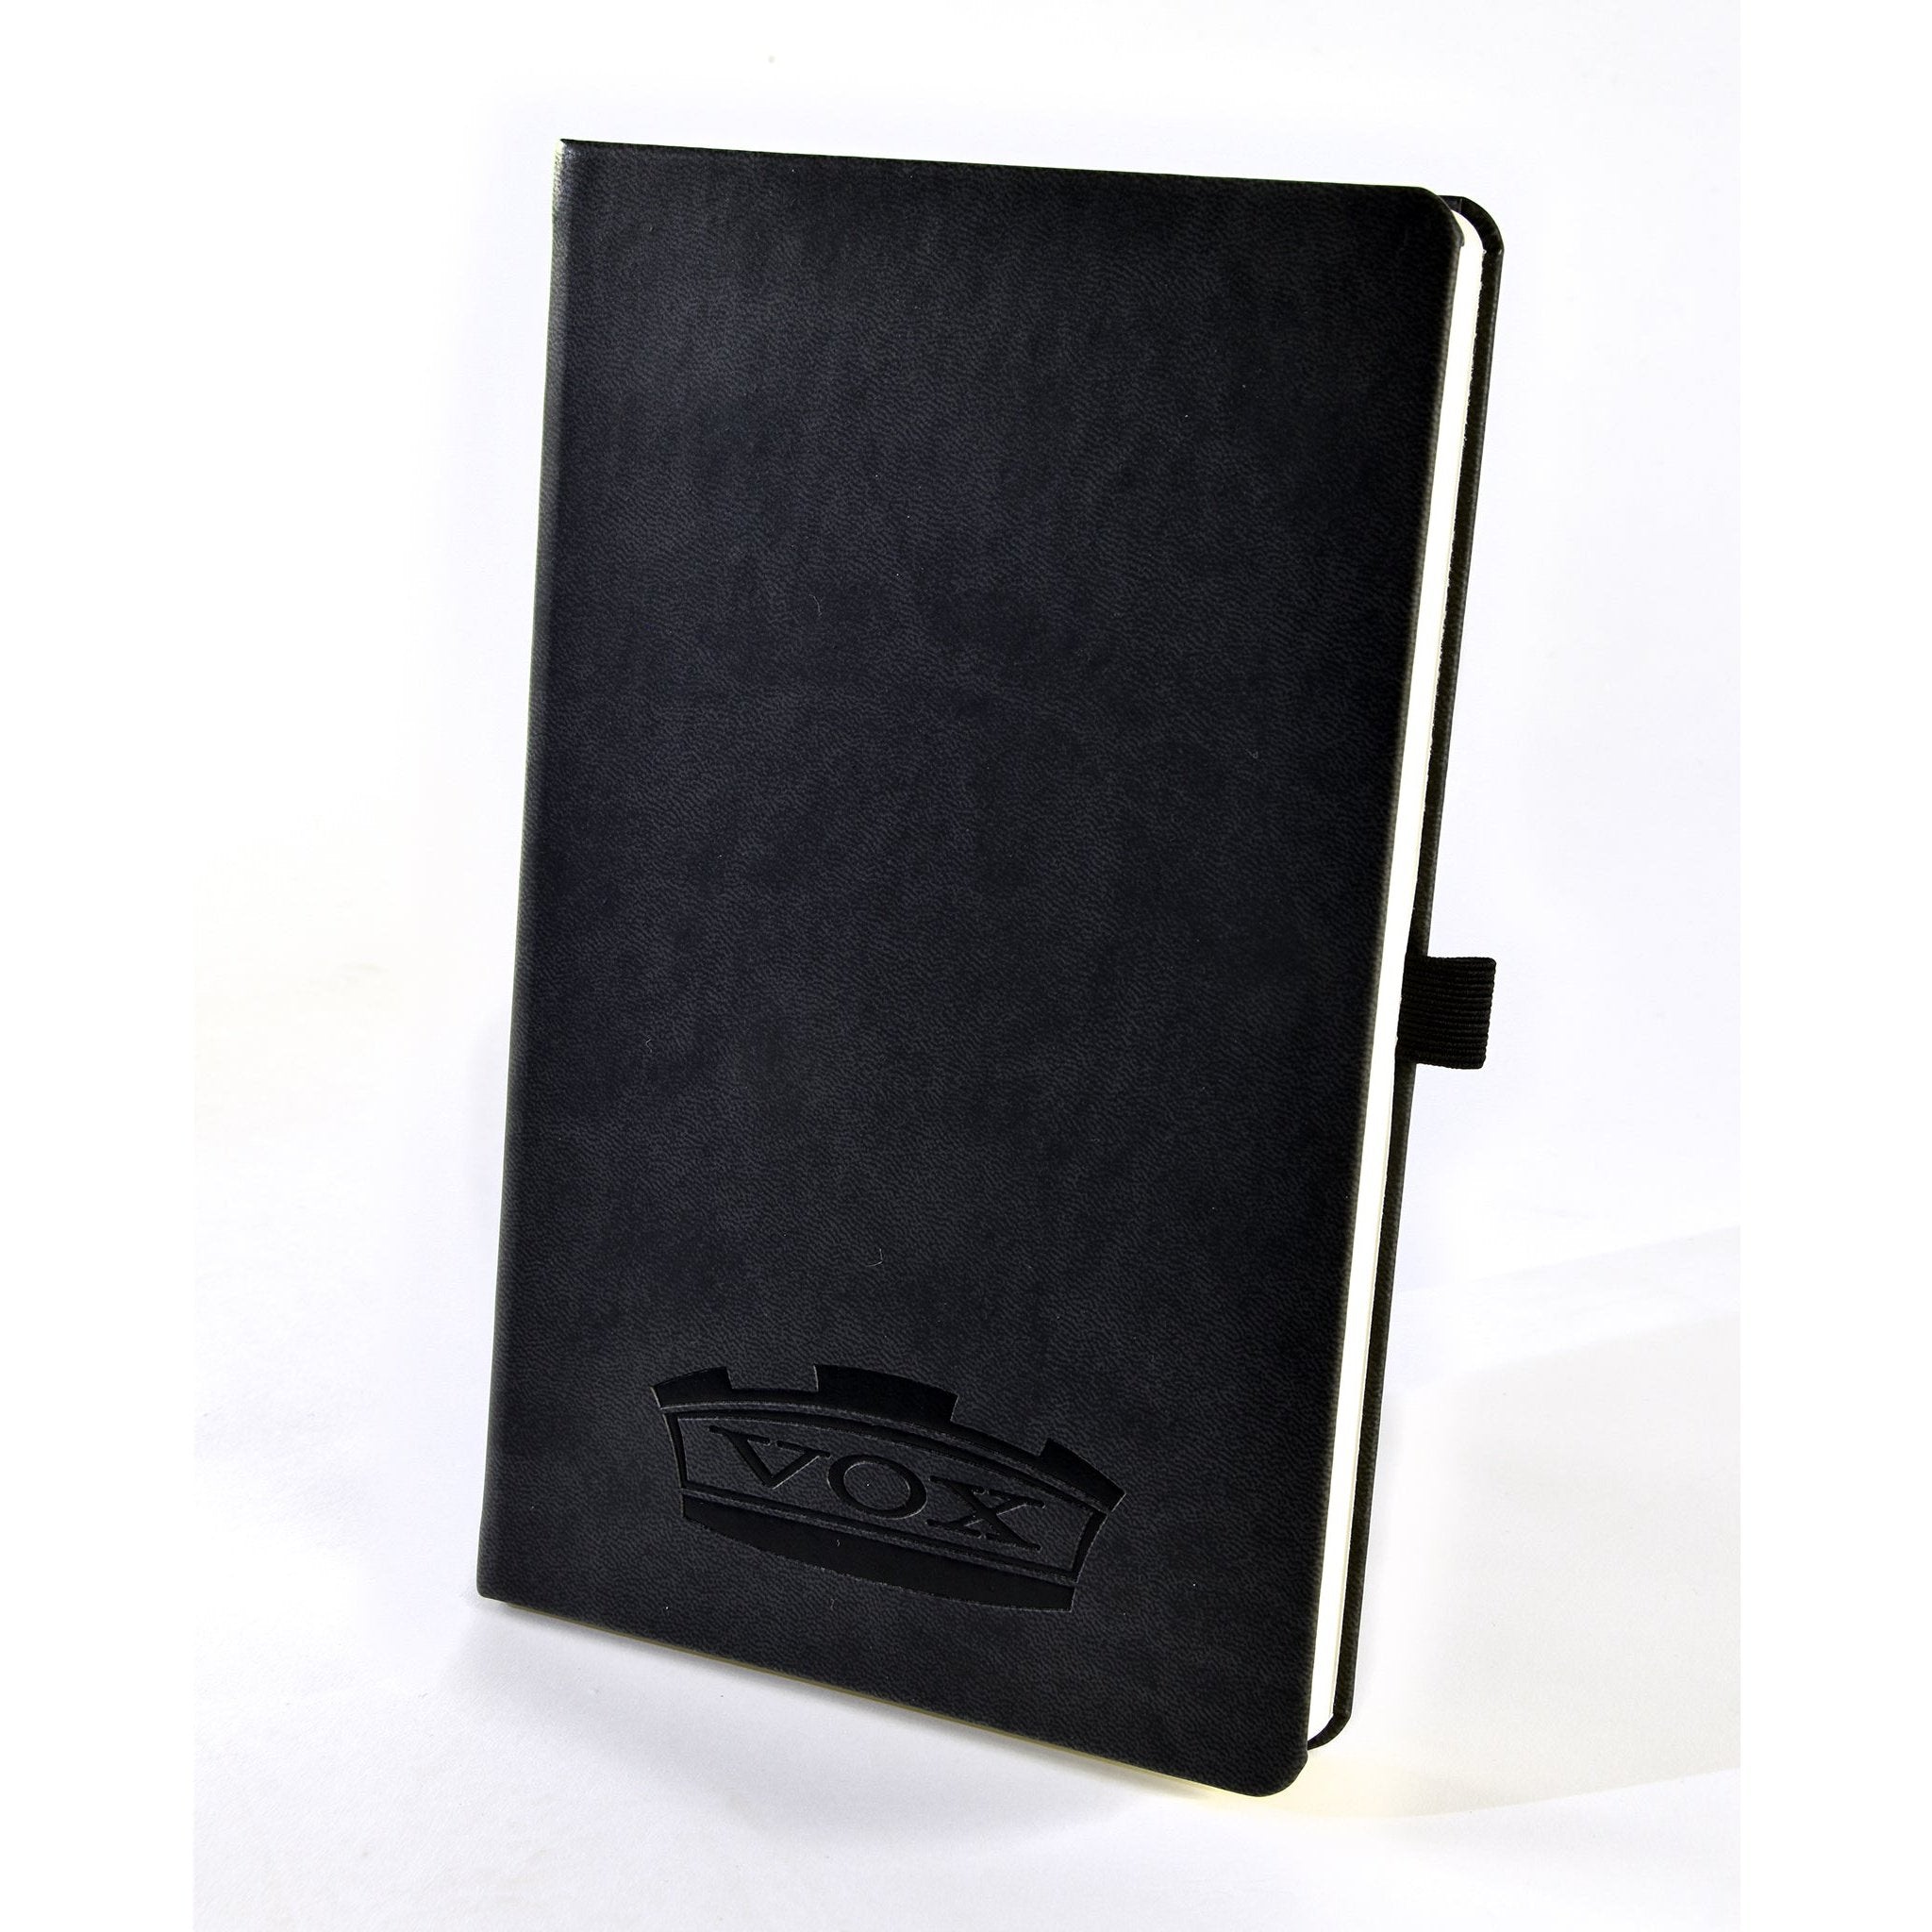 Vox Premium A5 Ruled Notebook 1